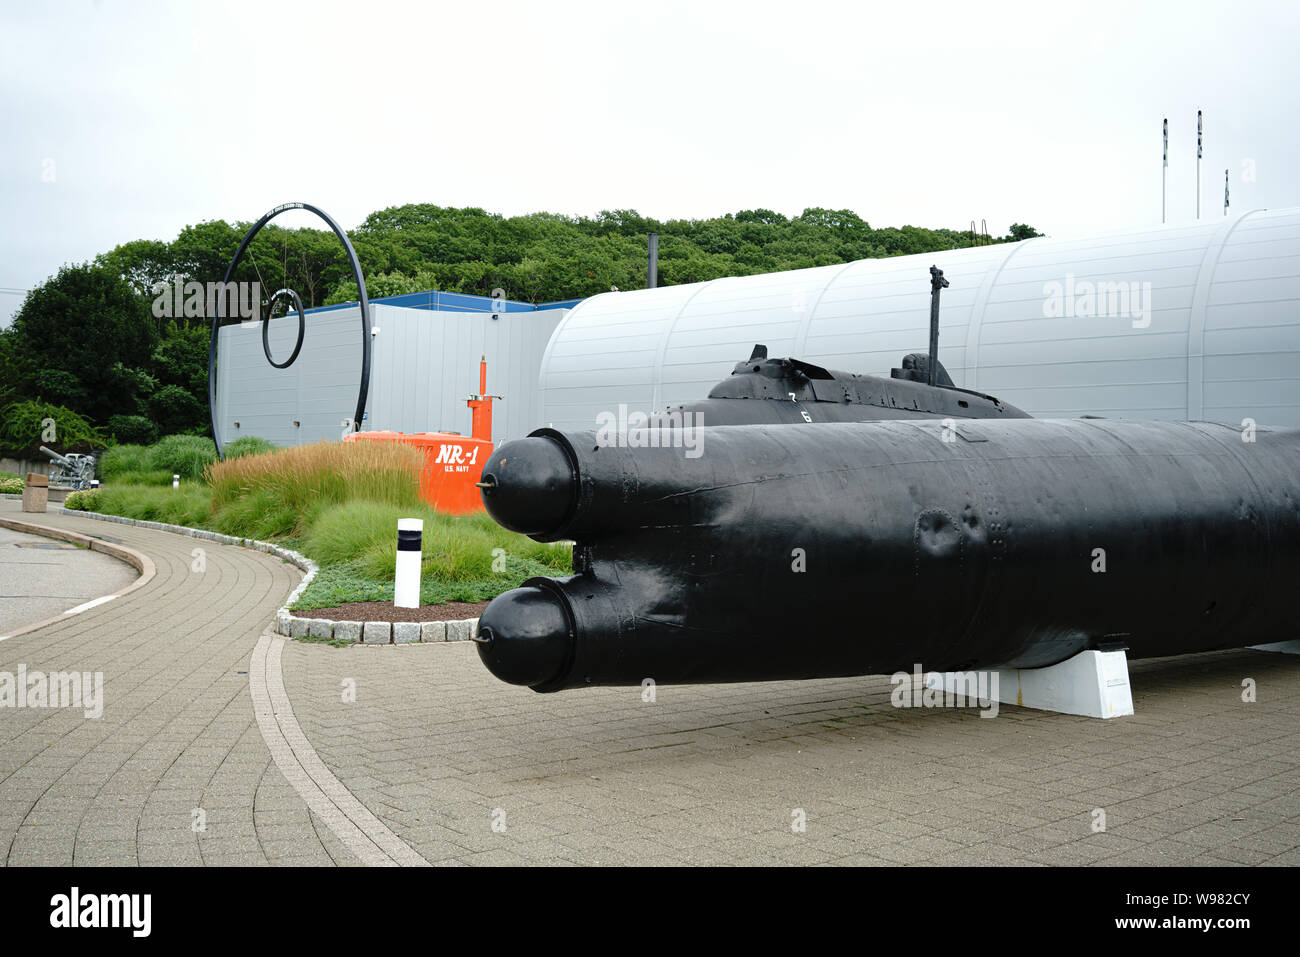 Le Musée de la force sous-marine de Groton dans le Connecticut. La partie orange de la NR-1 sous recherche. Type japonais noir un homme deux mini sub Voir info supplémentaire. Banque D'Images